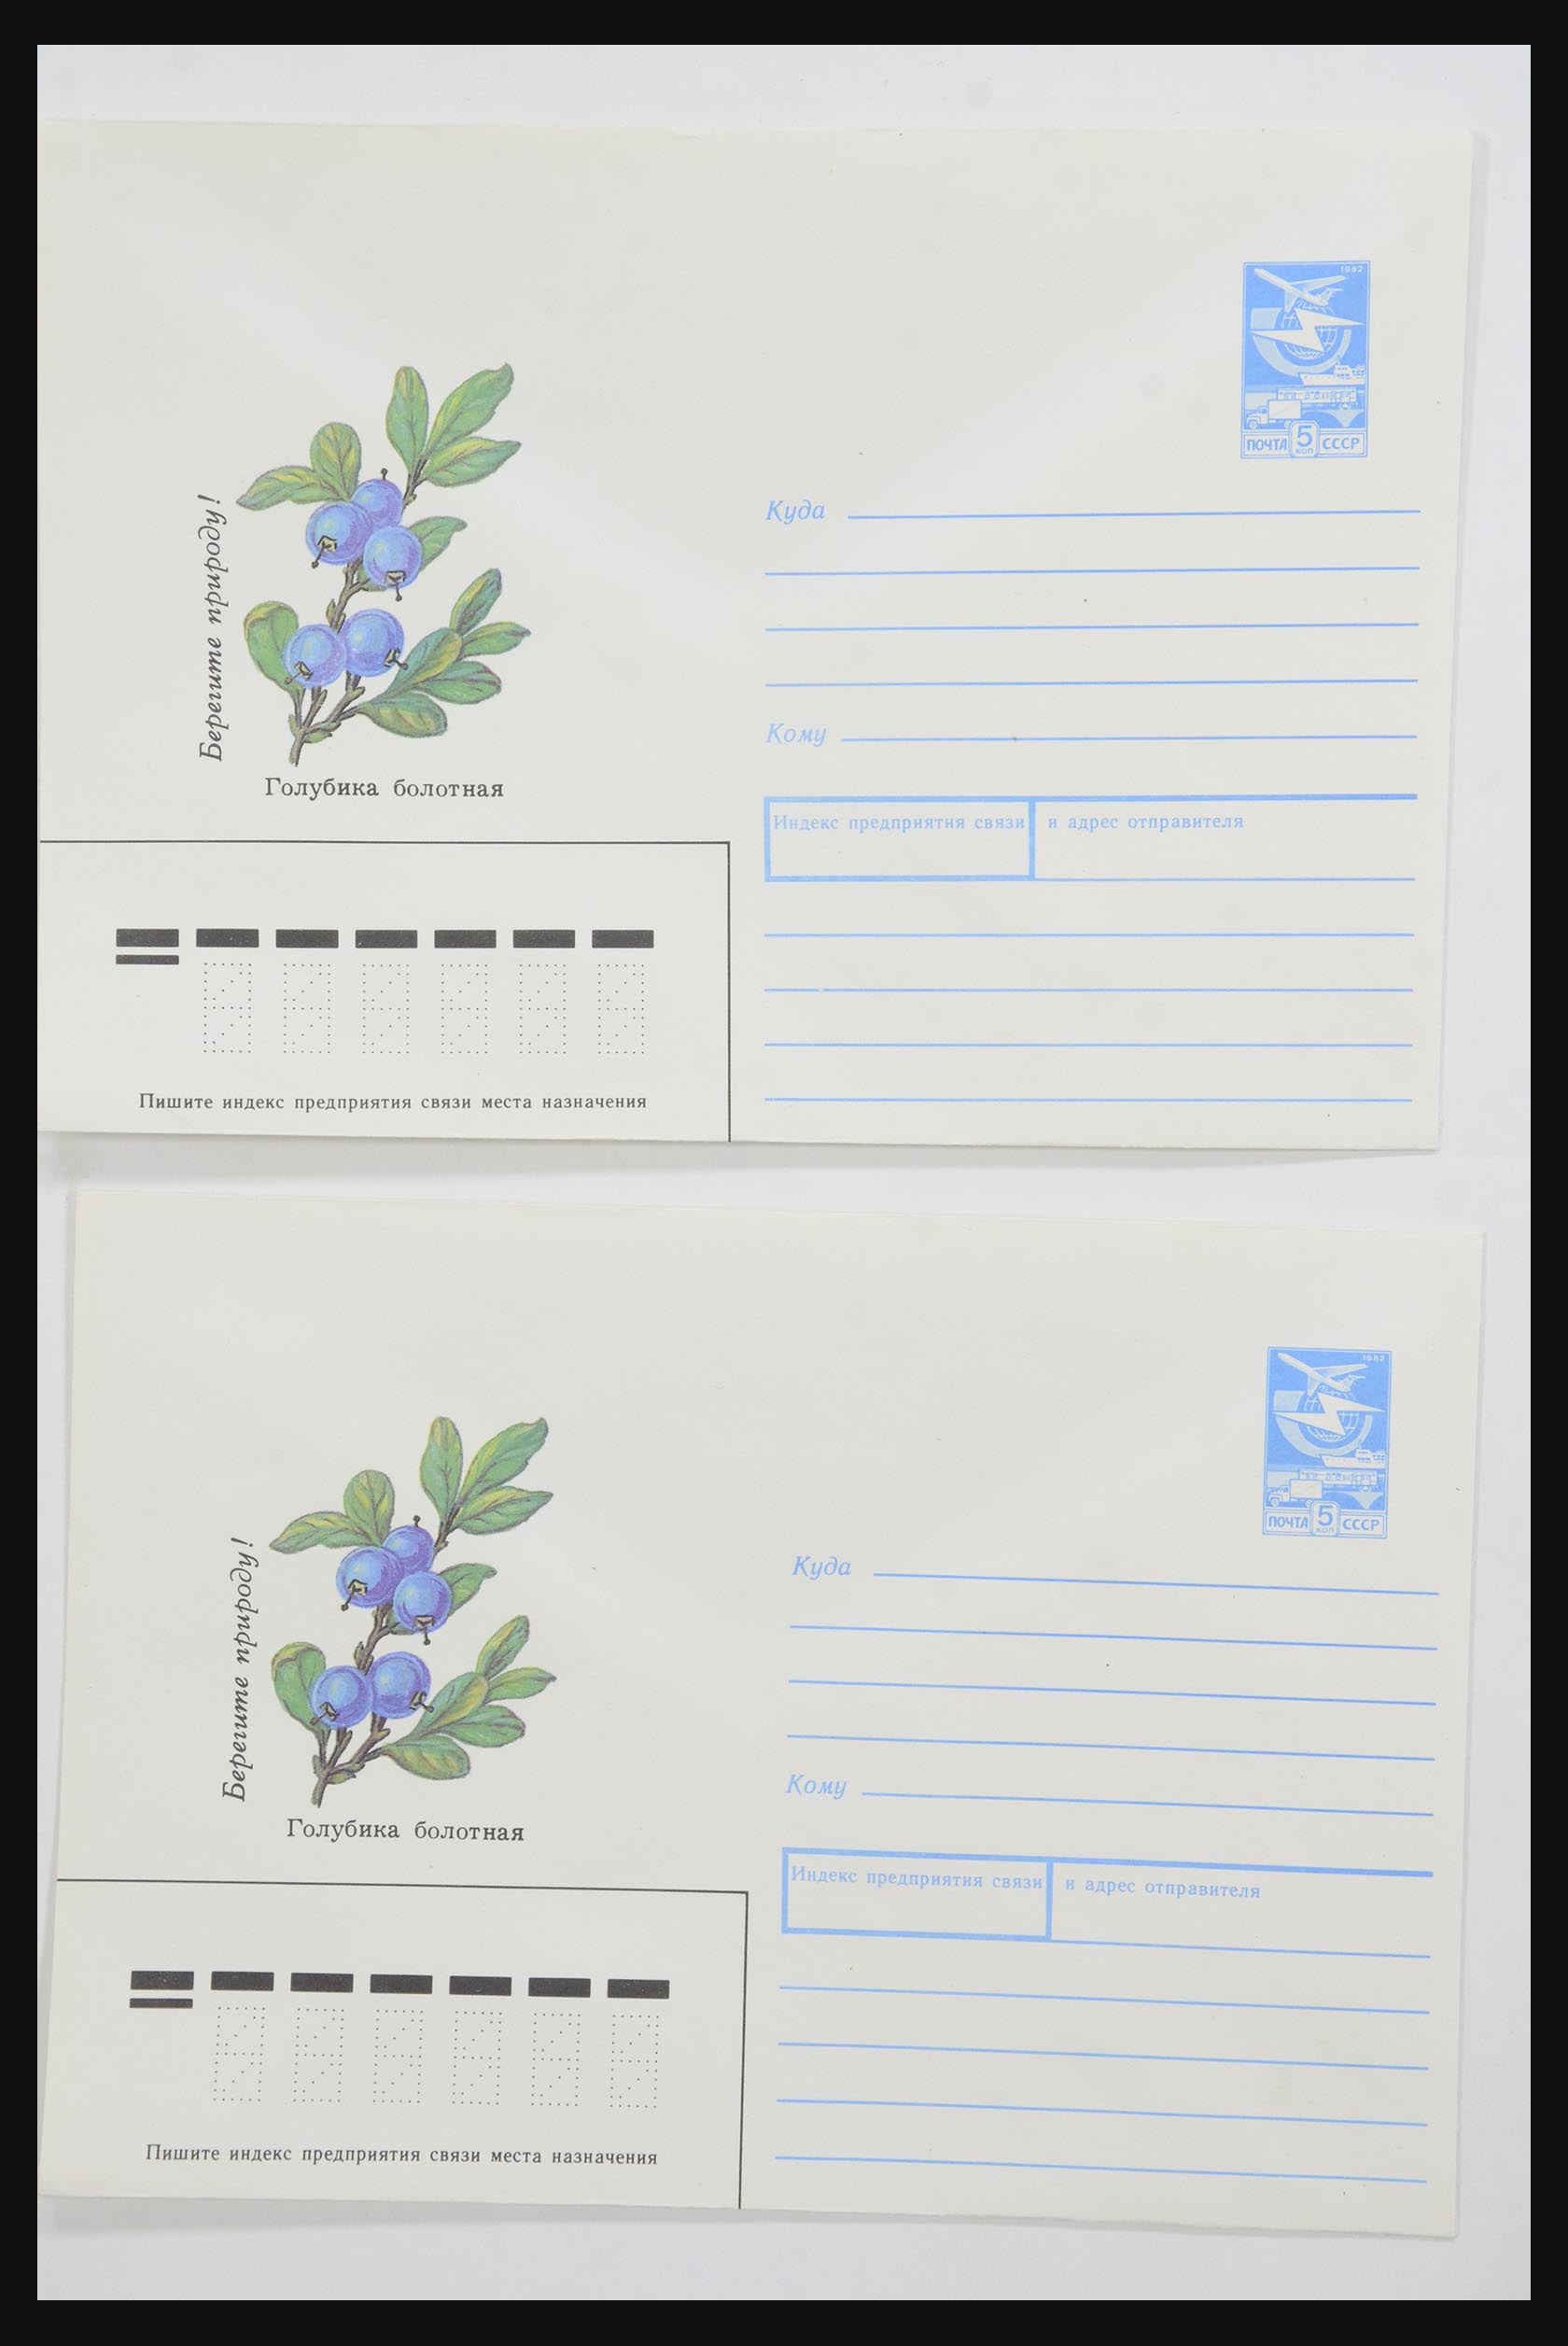 31928 0010 - 31928 Oost Europa brieven jaren 60/90.